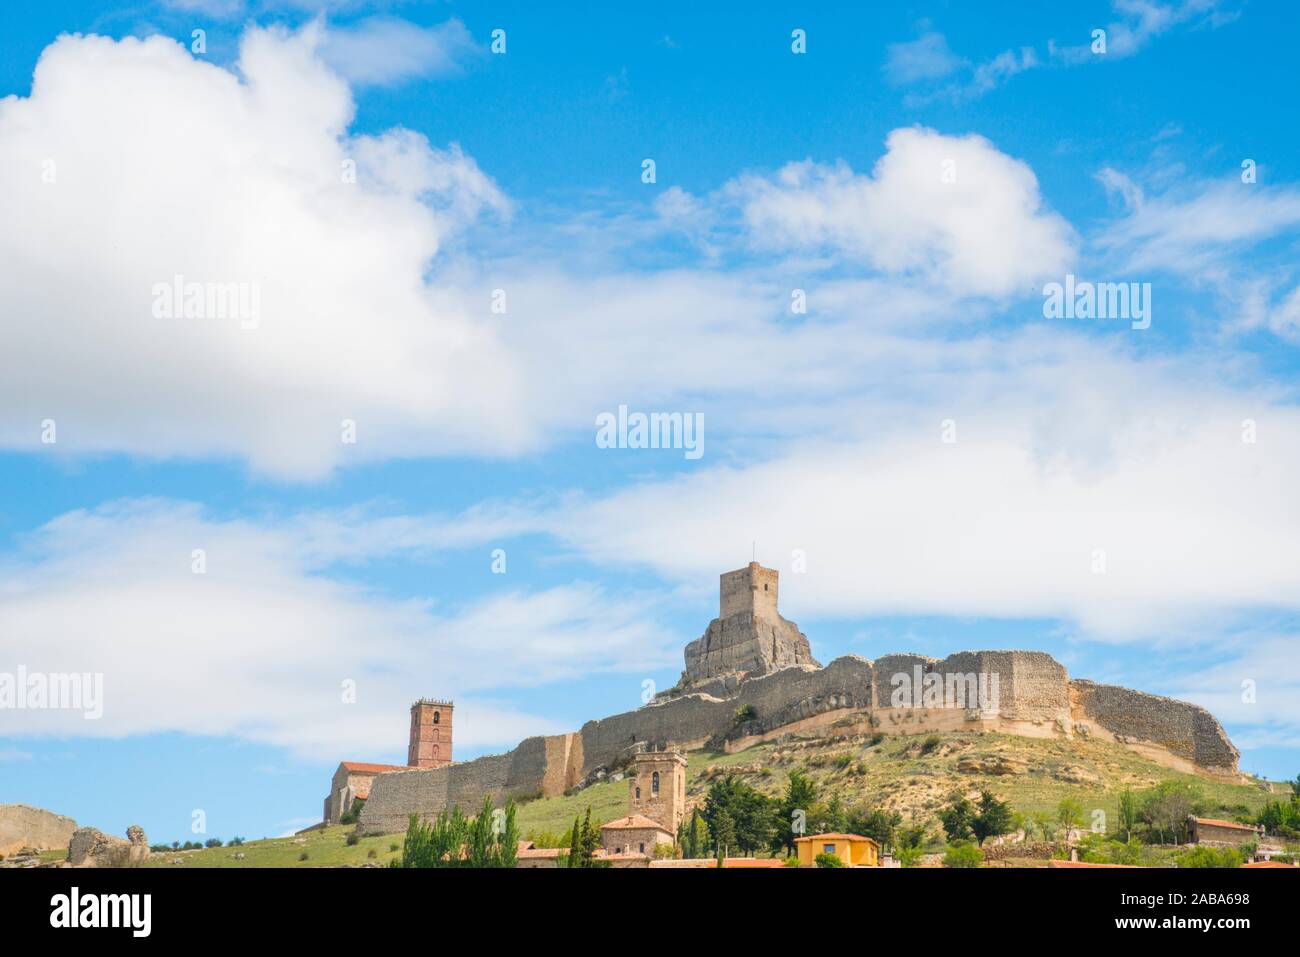 El castillo y la muralla de la ciudad. Atienza, provincia de Guadalajara, Castilla La Mancha, España. Foto de stock